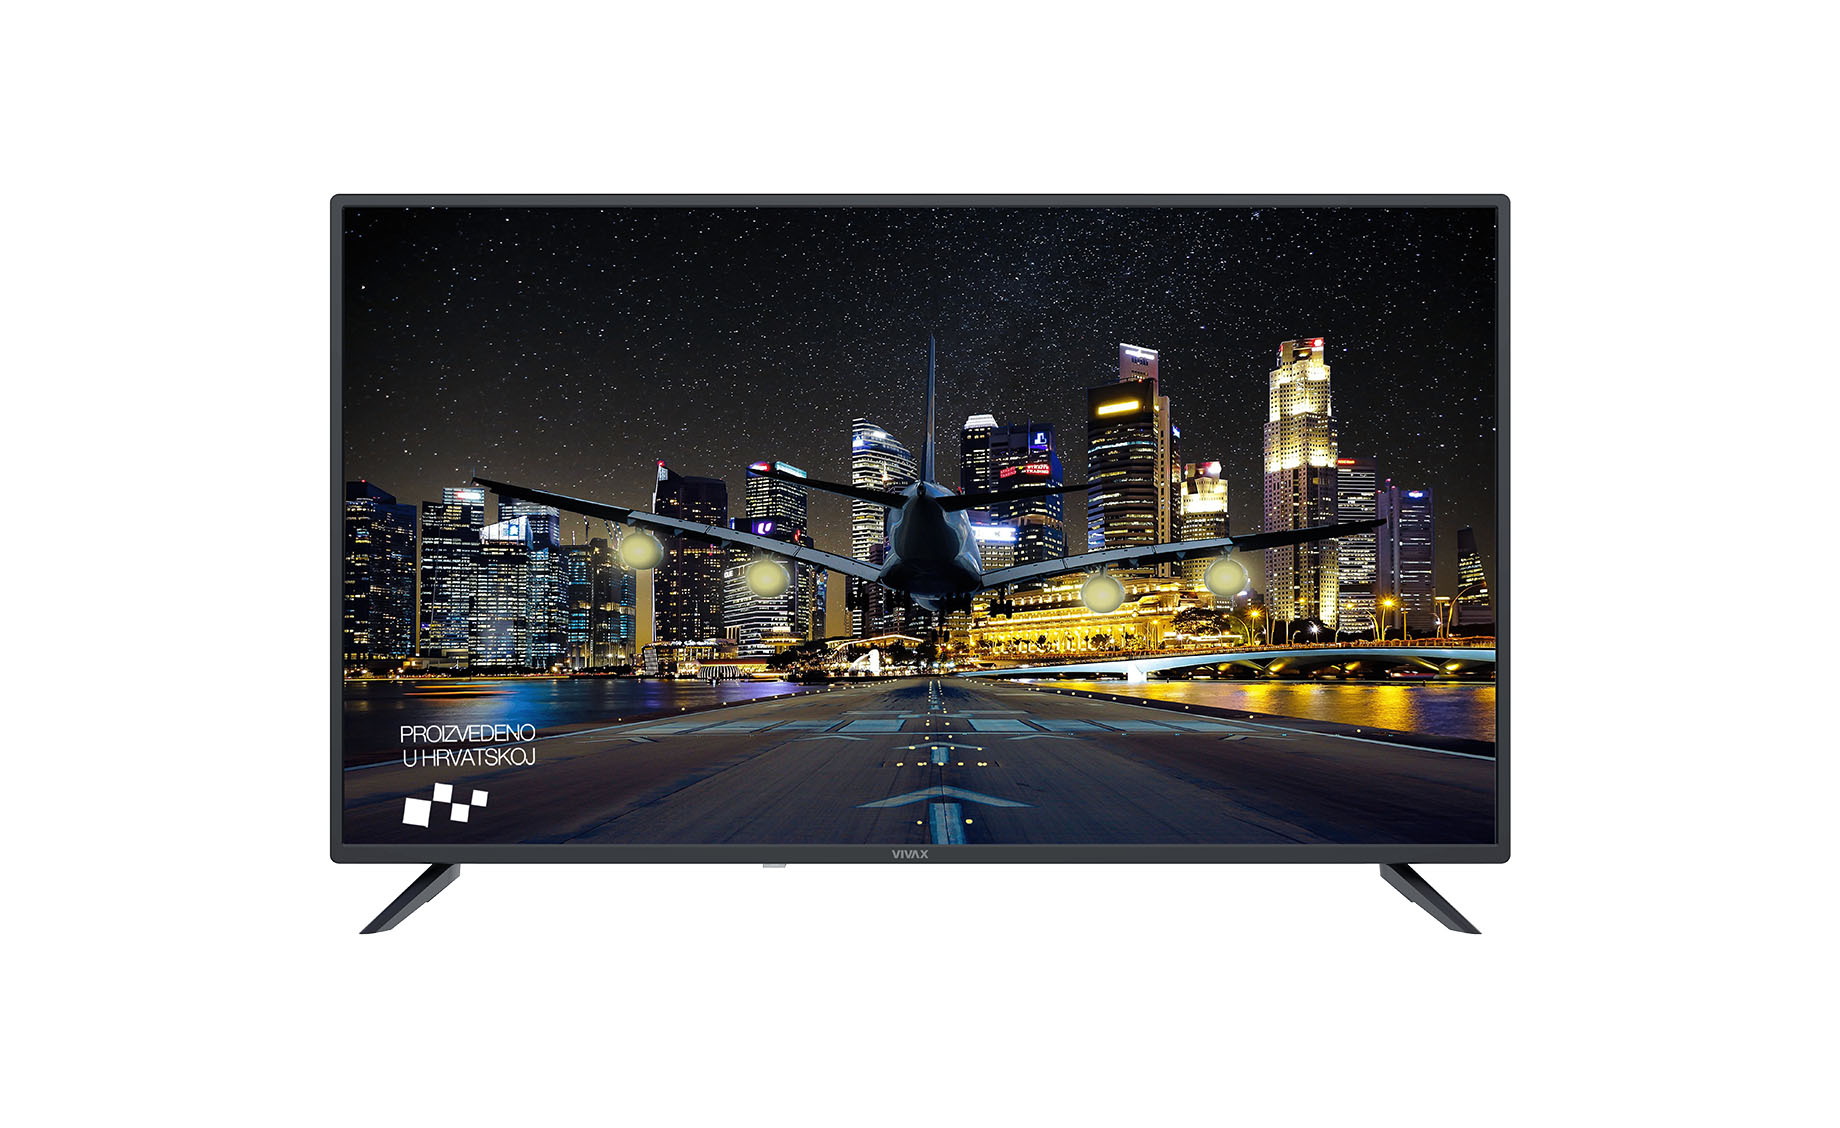 Vivax TV-40LE115T2S2 Full HD LED TV